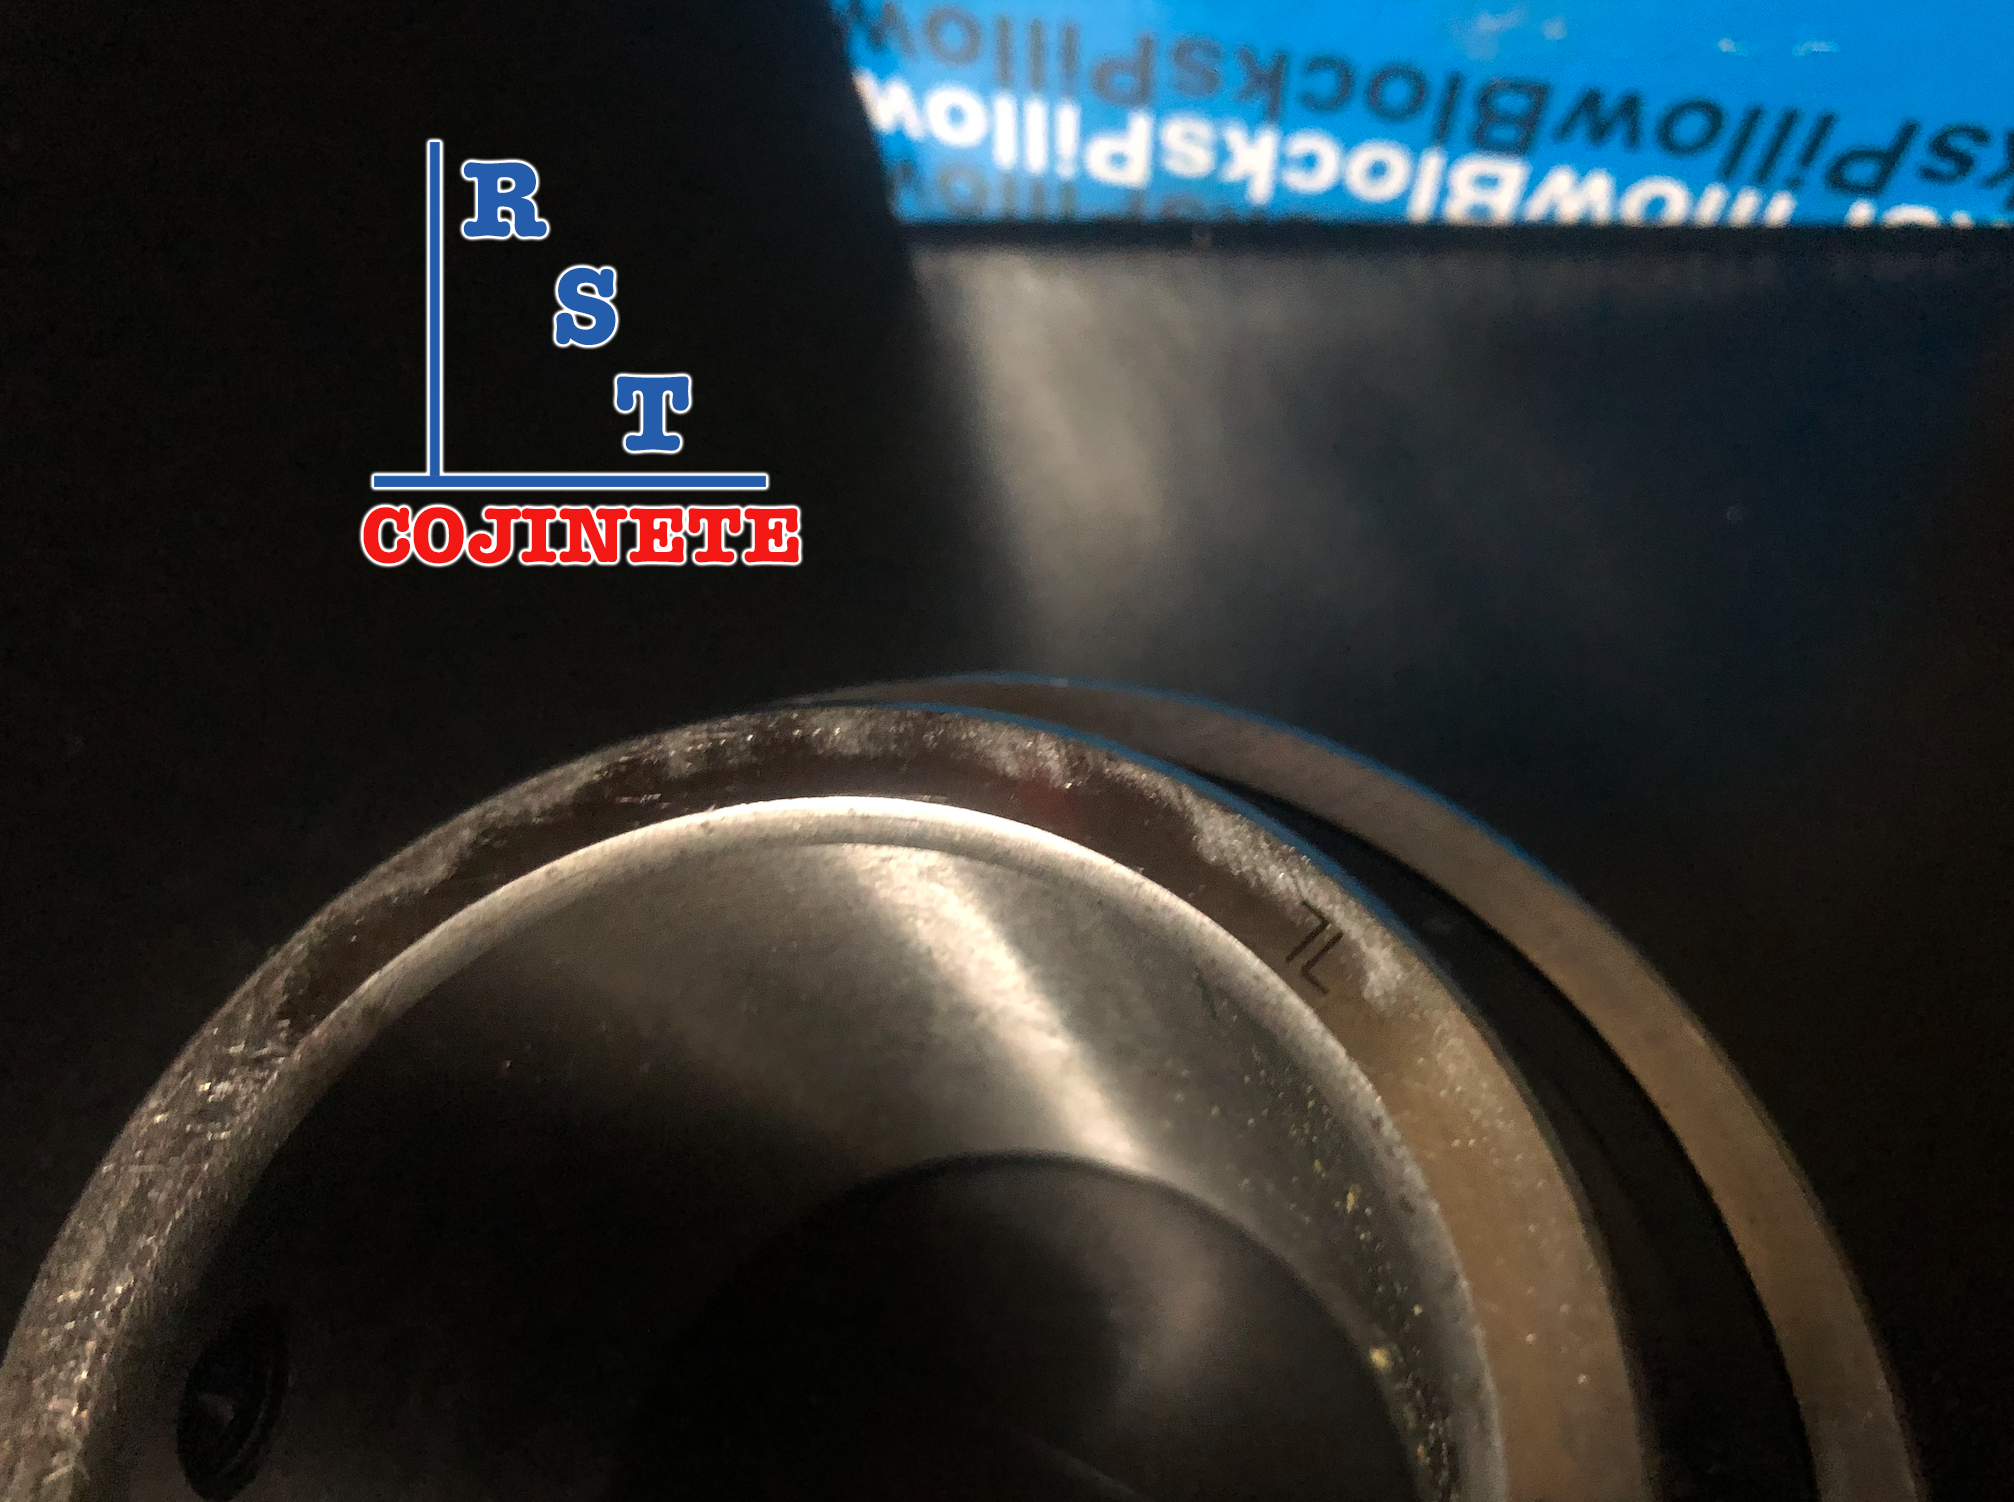 Cojinete insertable UC204 | Rodamiento para eje de 20mm rígido de bolas con sello de hule para chumacera